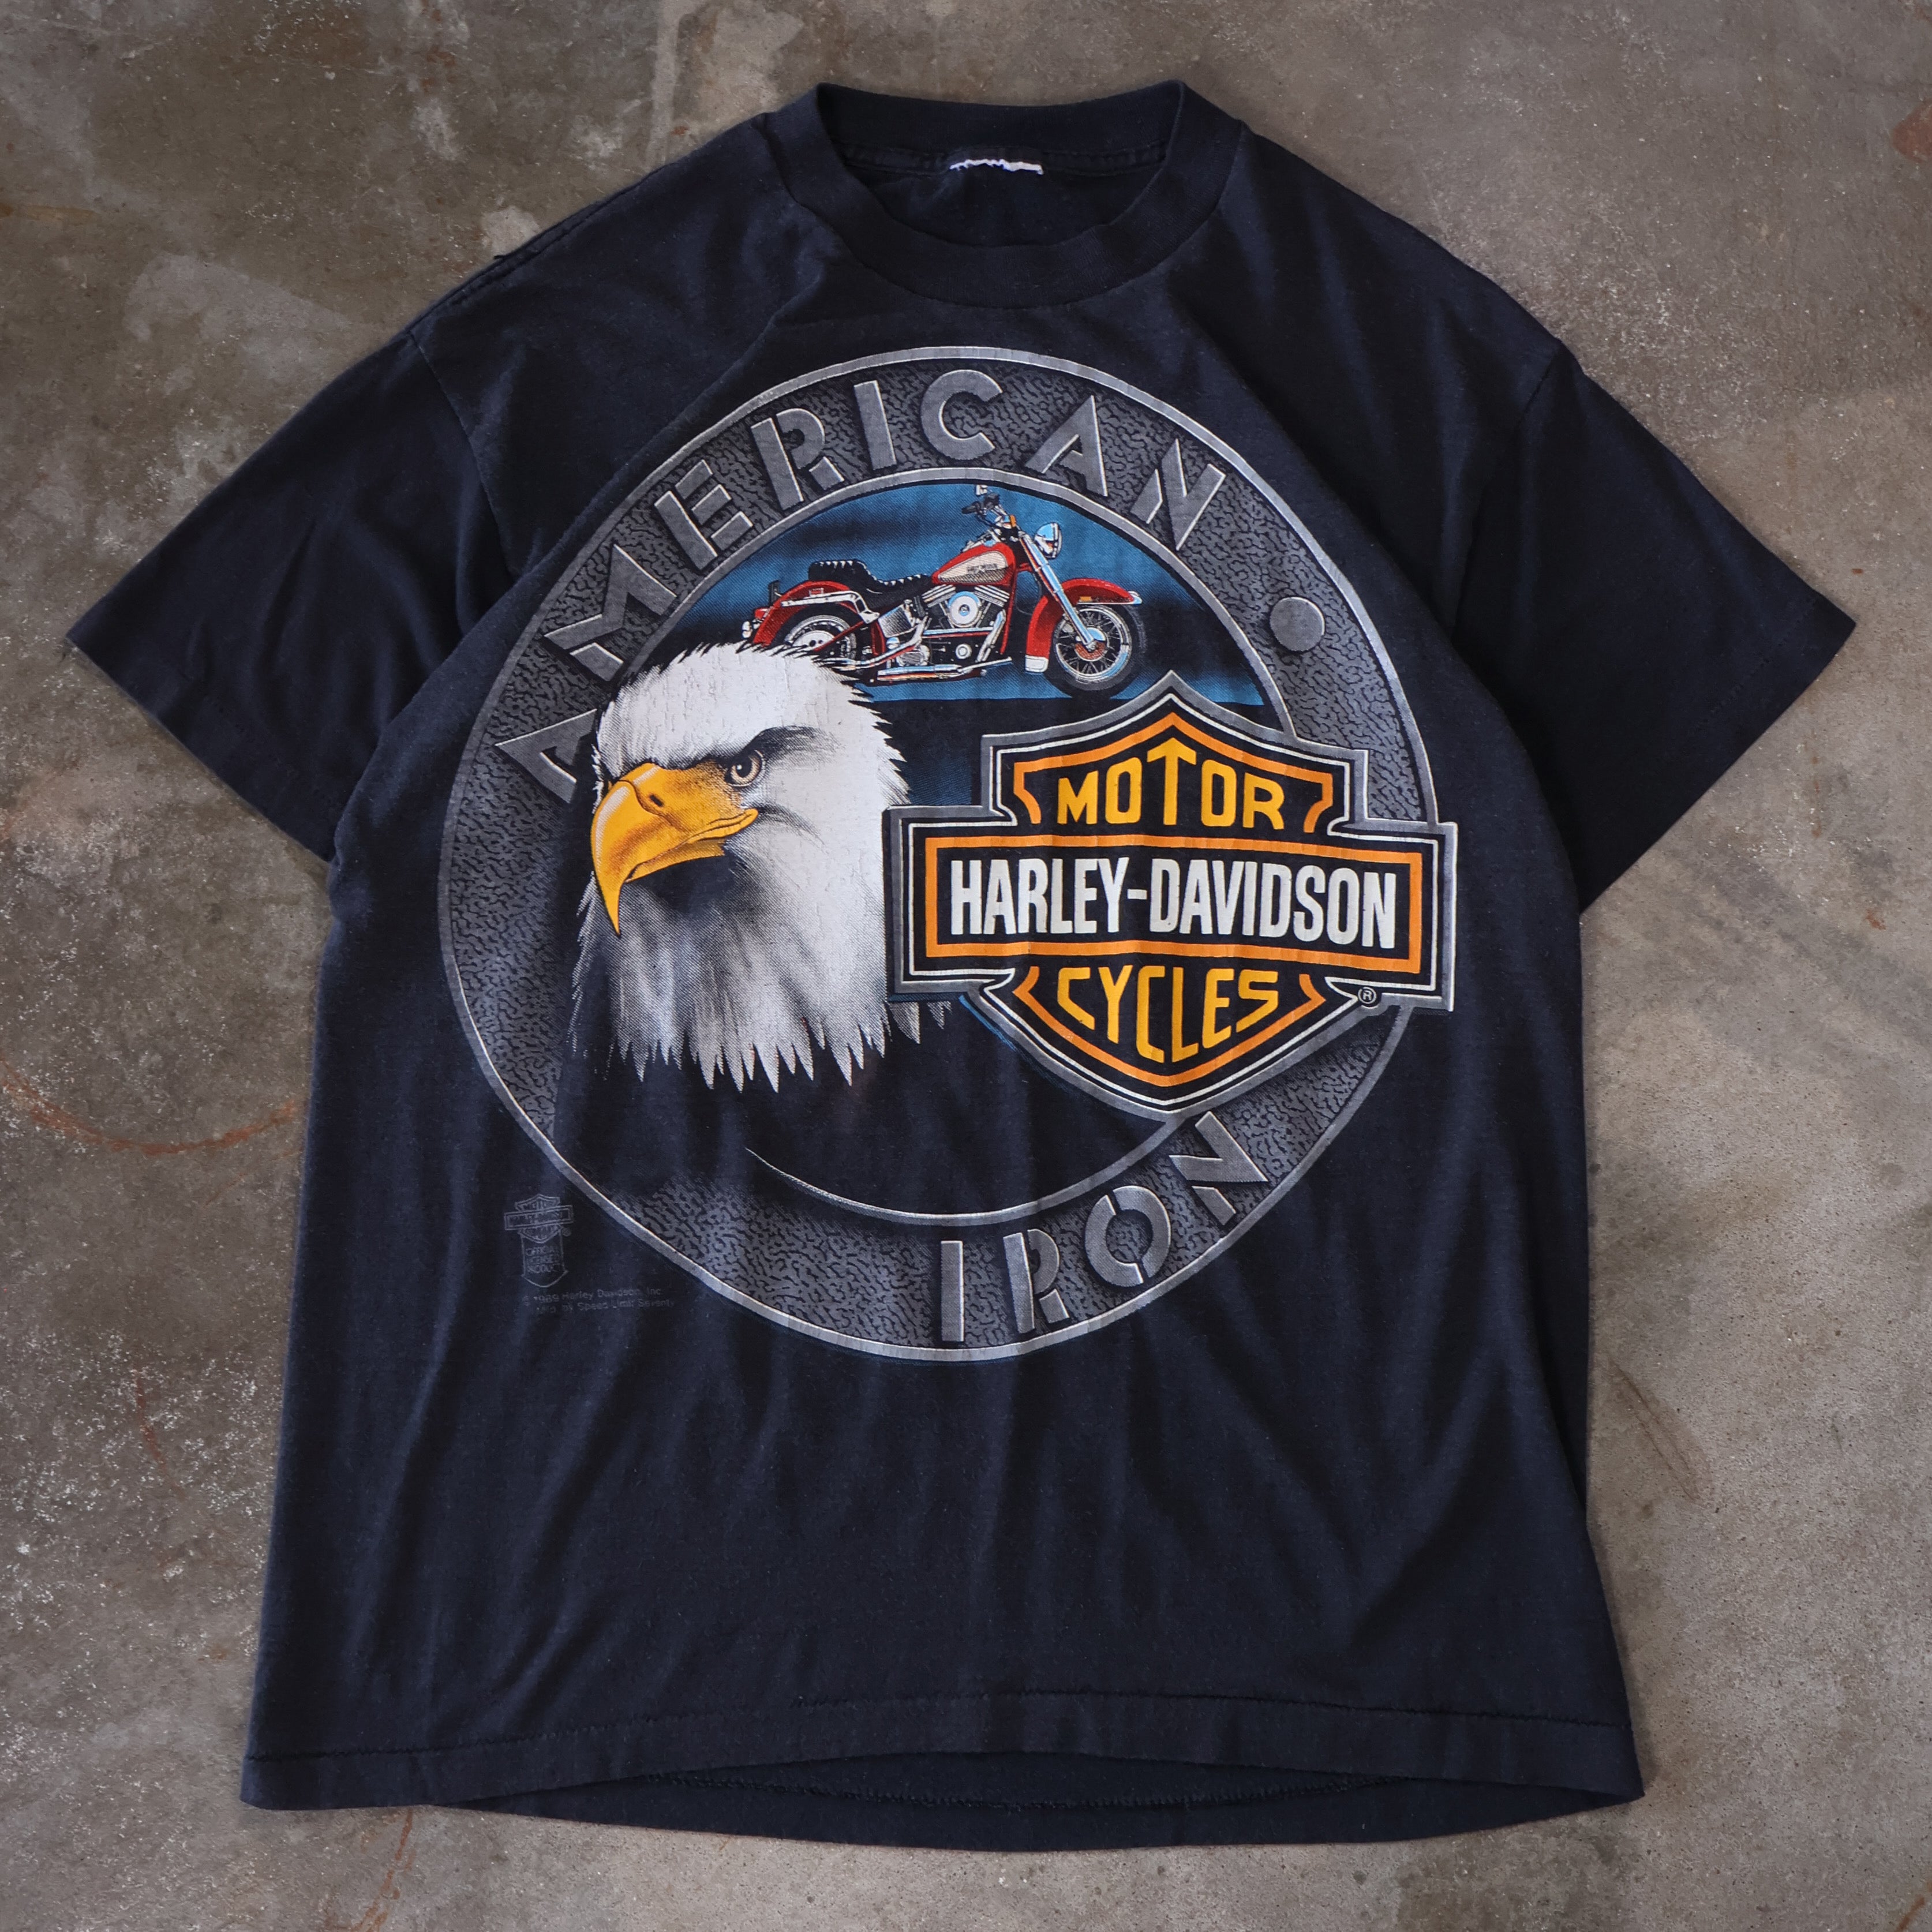 Harley Davidson American Iron T-Shirt 1989 (Large)